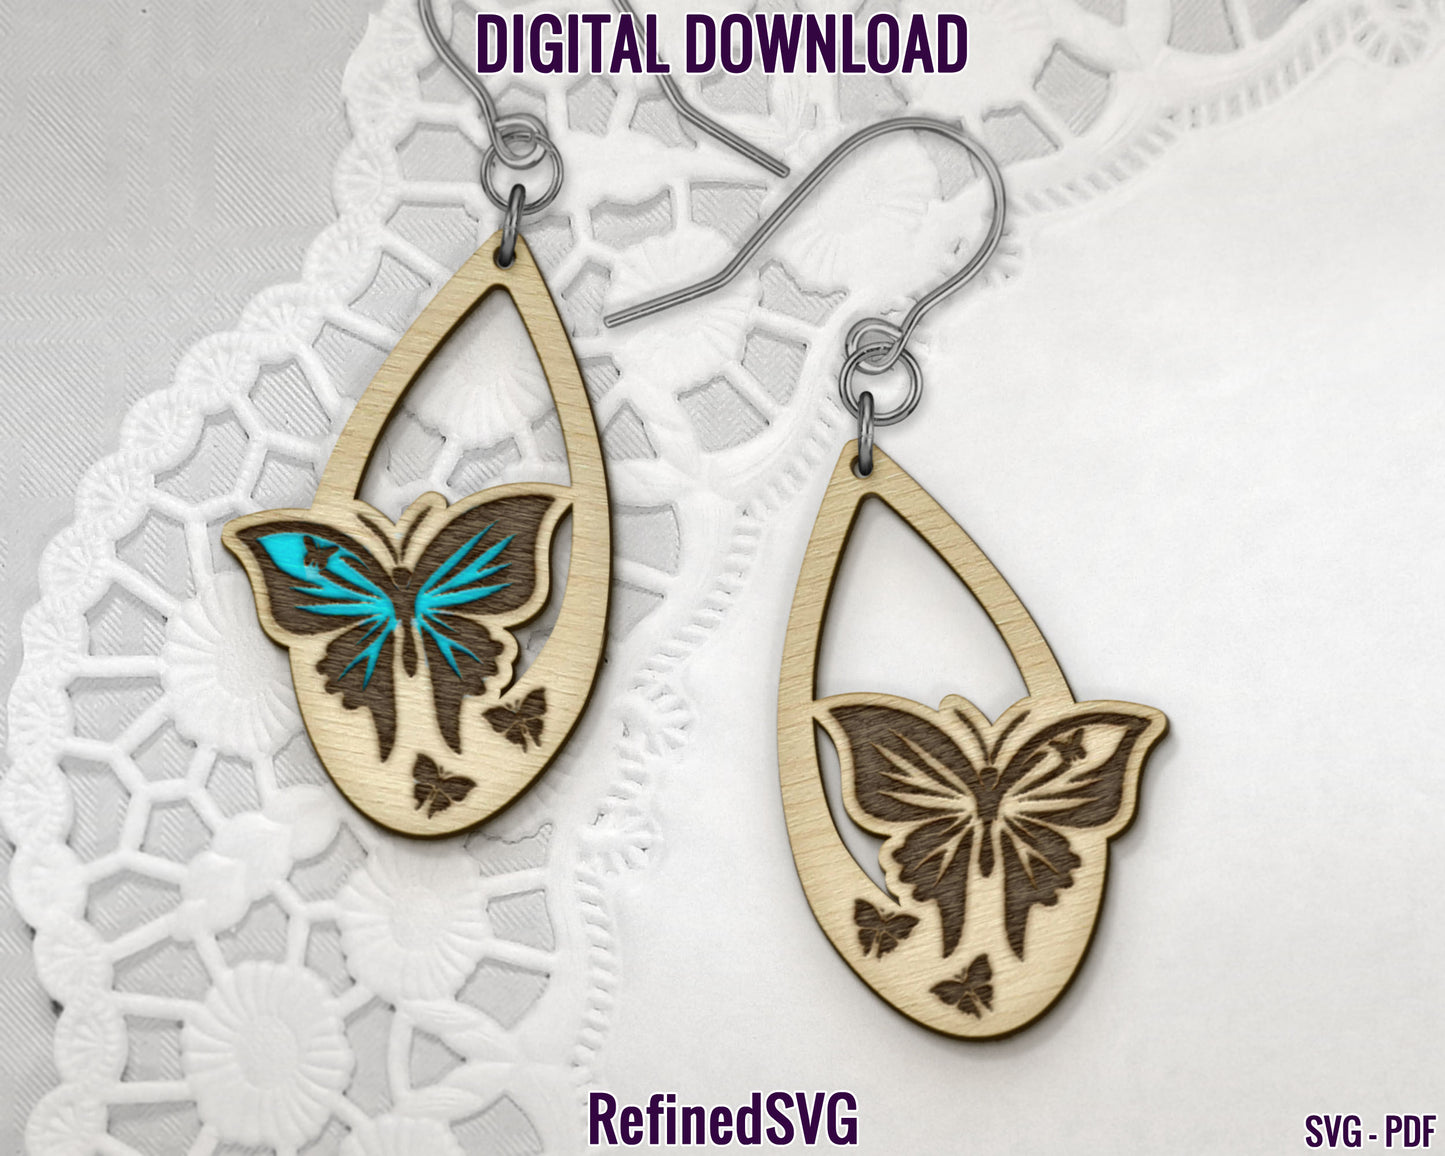 Butterfly Earring SVG Bundle, 4 Butterfly Earring Files, Butterflies Earring SVG Set, Butterfly Earring Cut Files